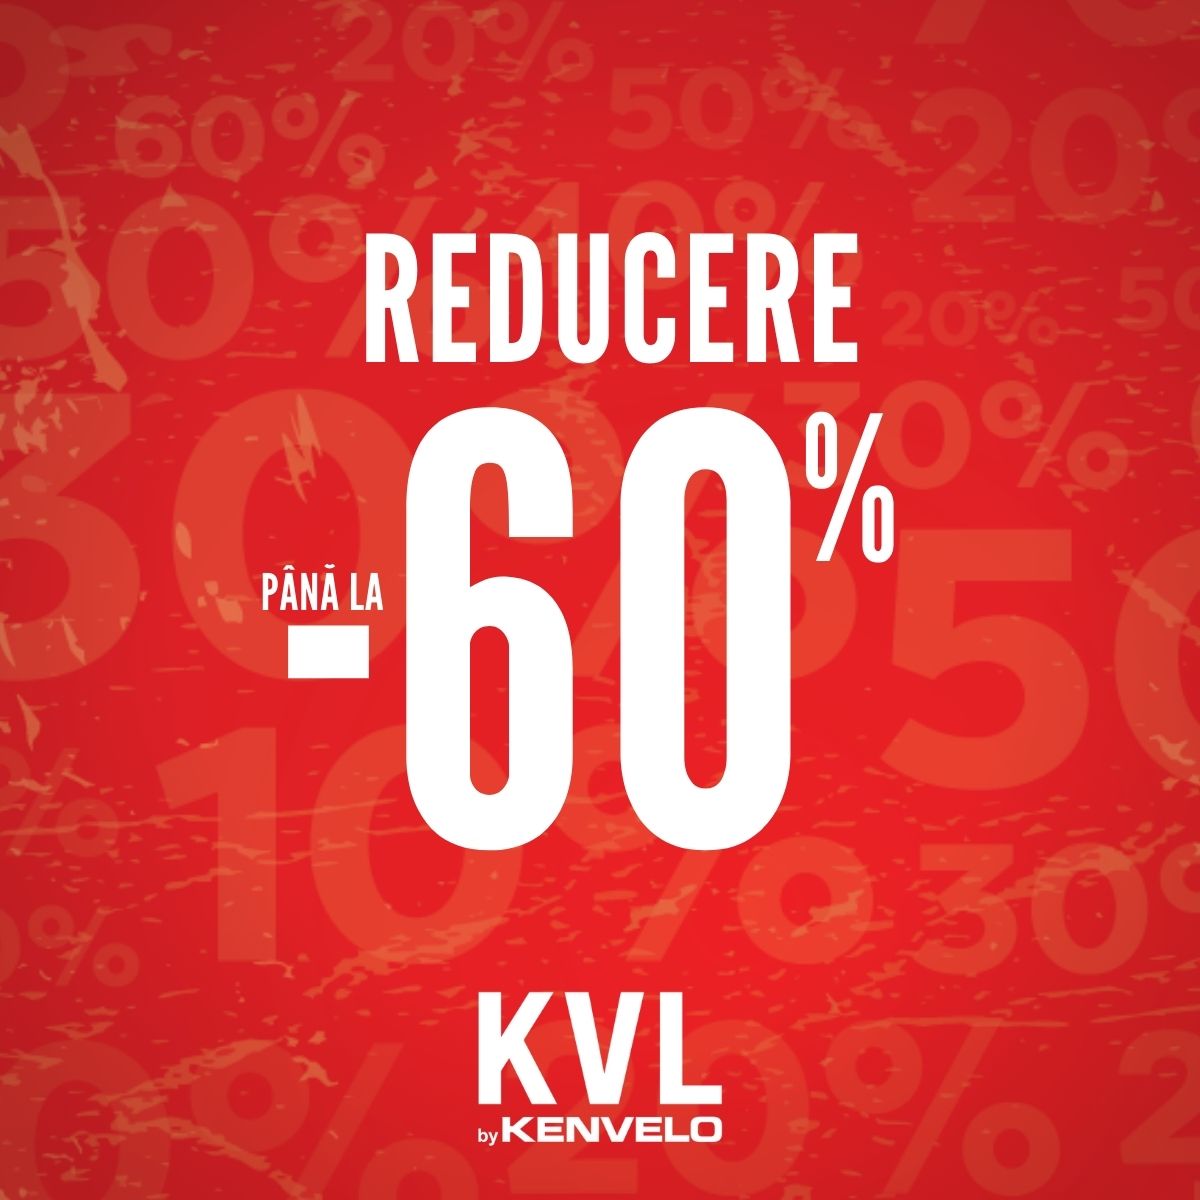 KVL: PROMOTIE DE VARA pana la -60%